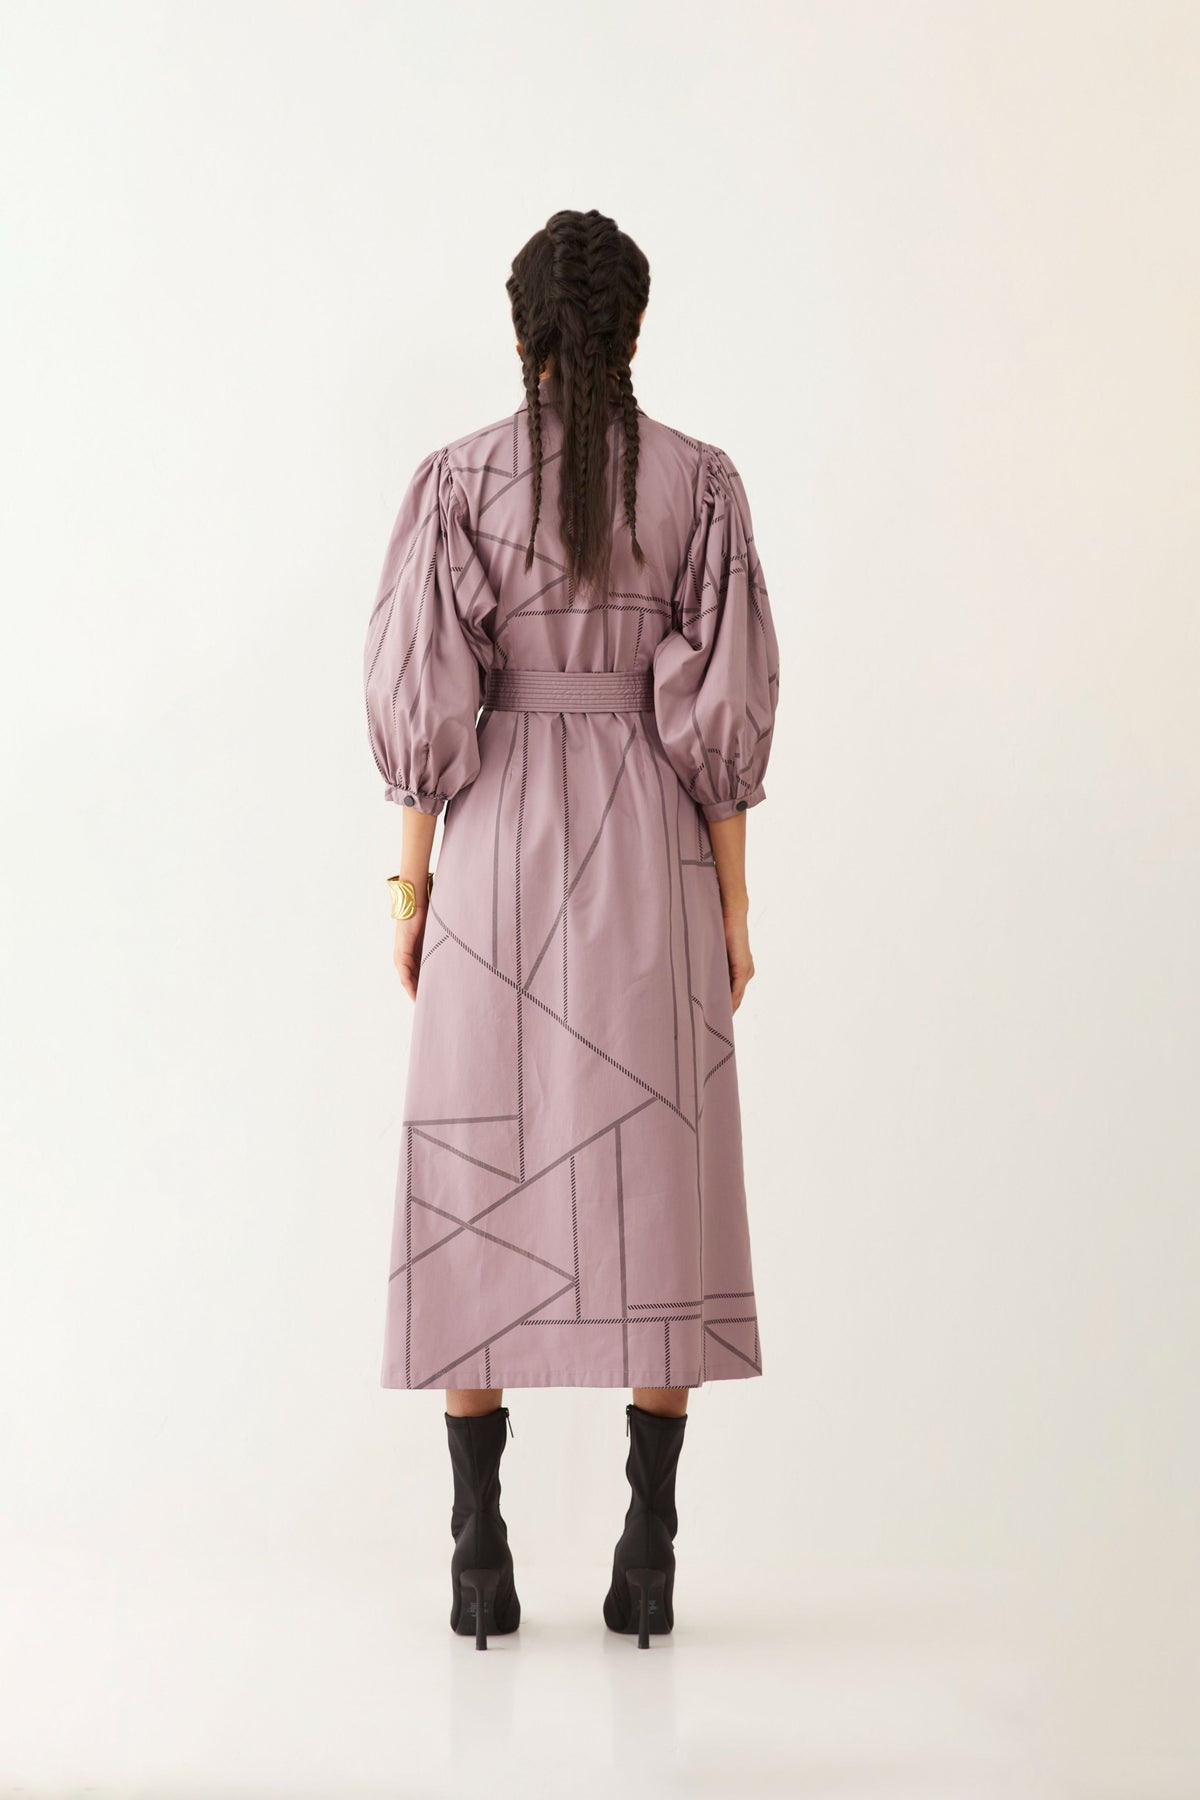 Mizuri Dress In Pipeline Print